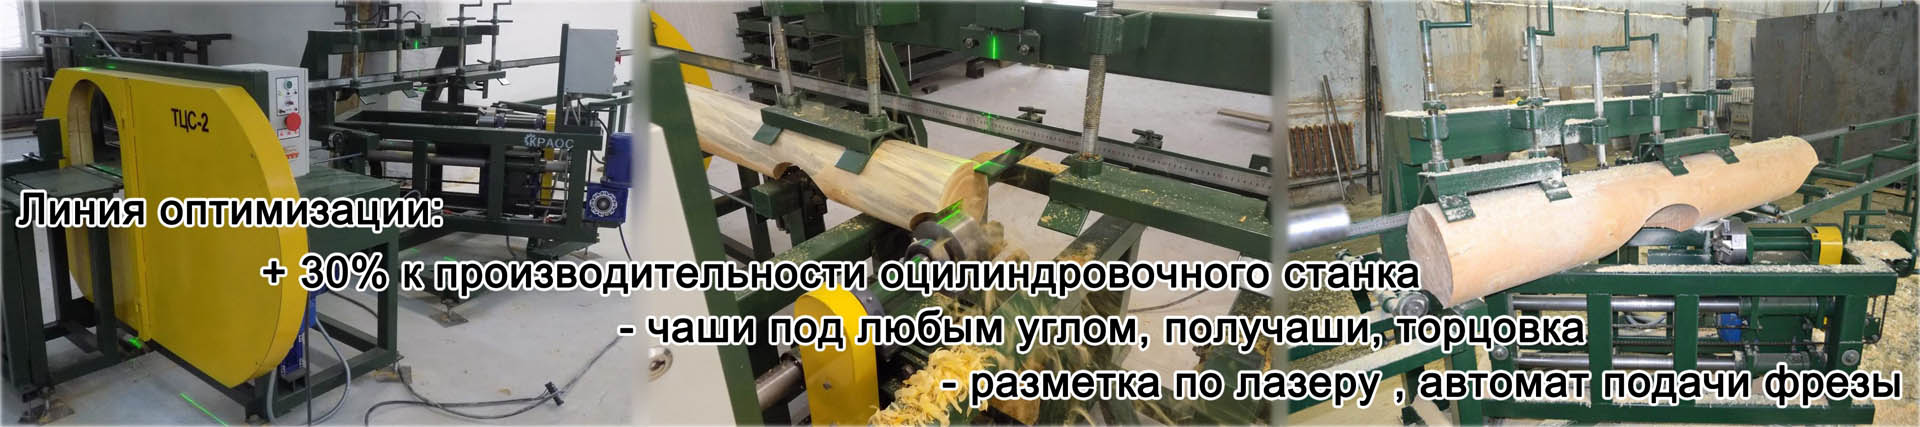 Производство и продажа деревообрабатывающего оборудования